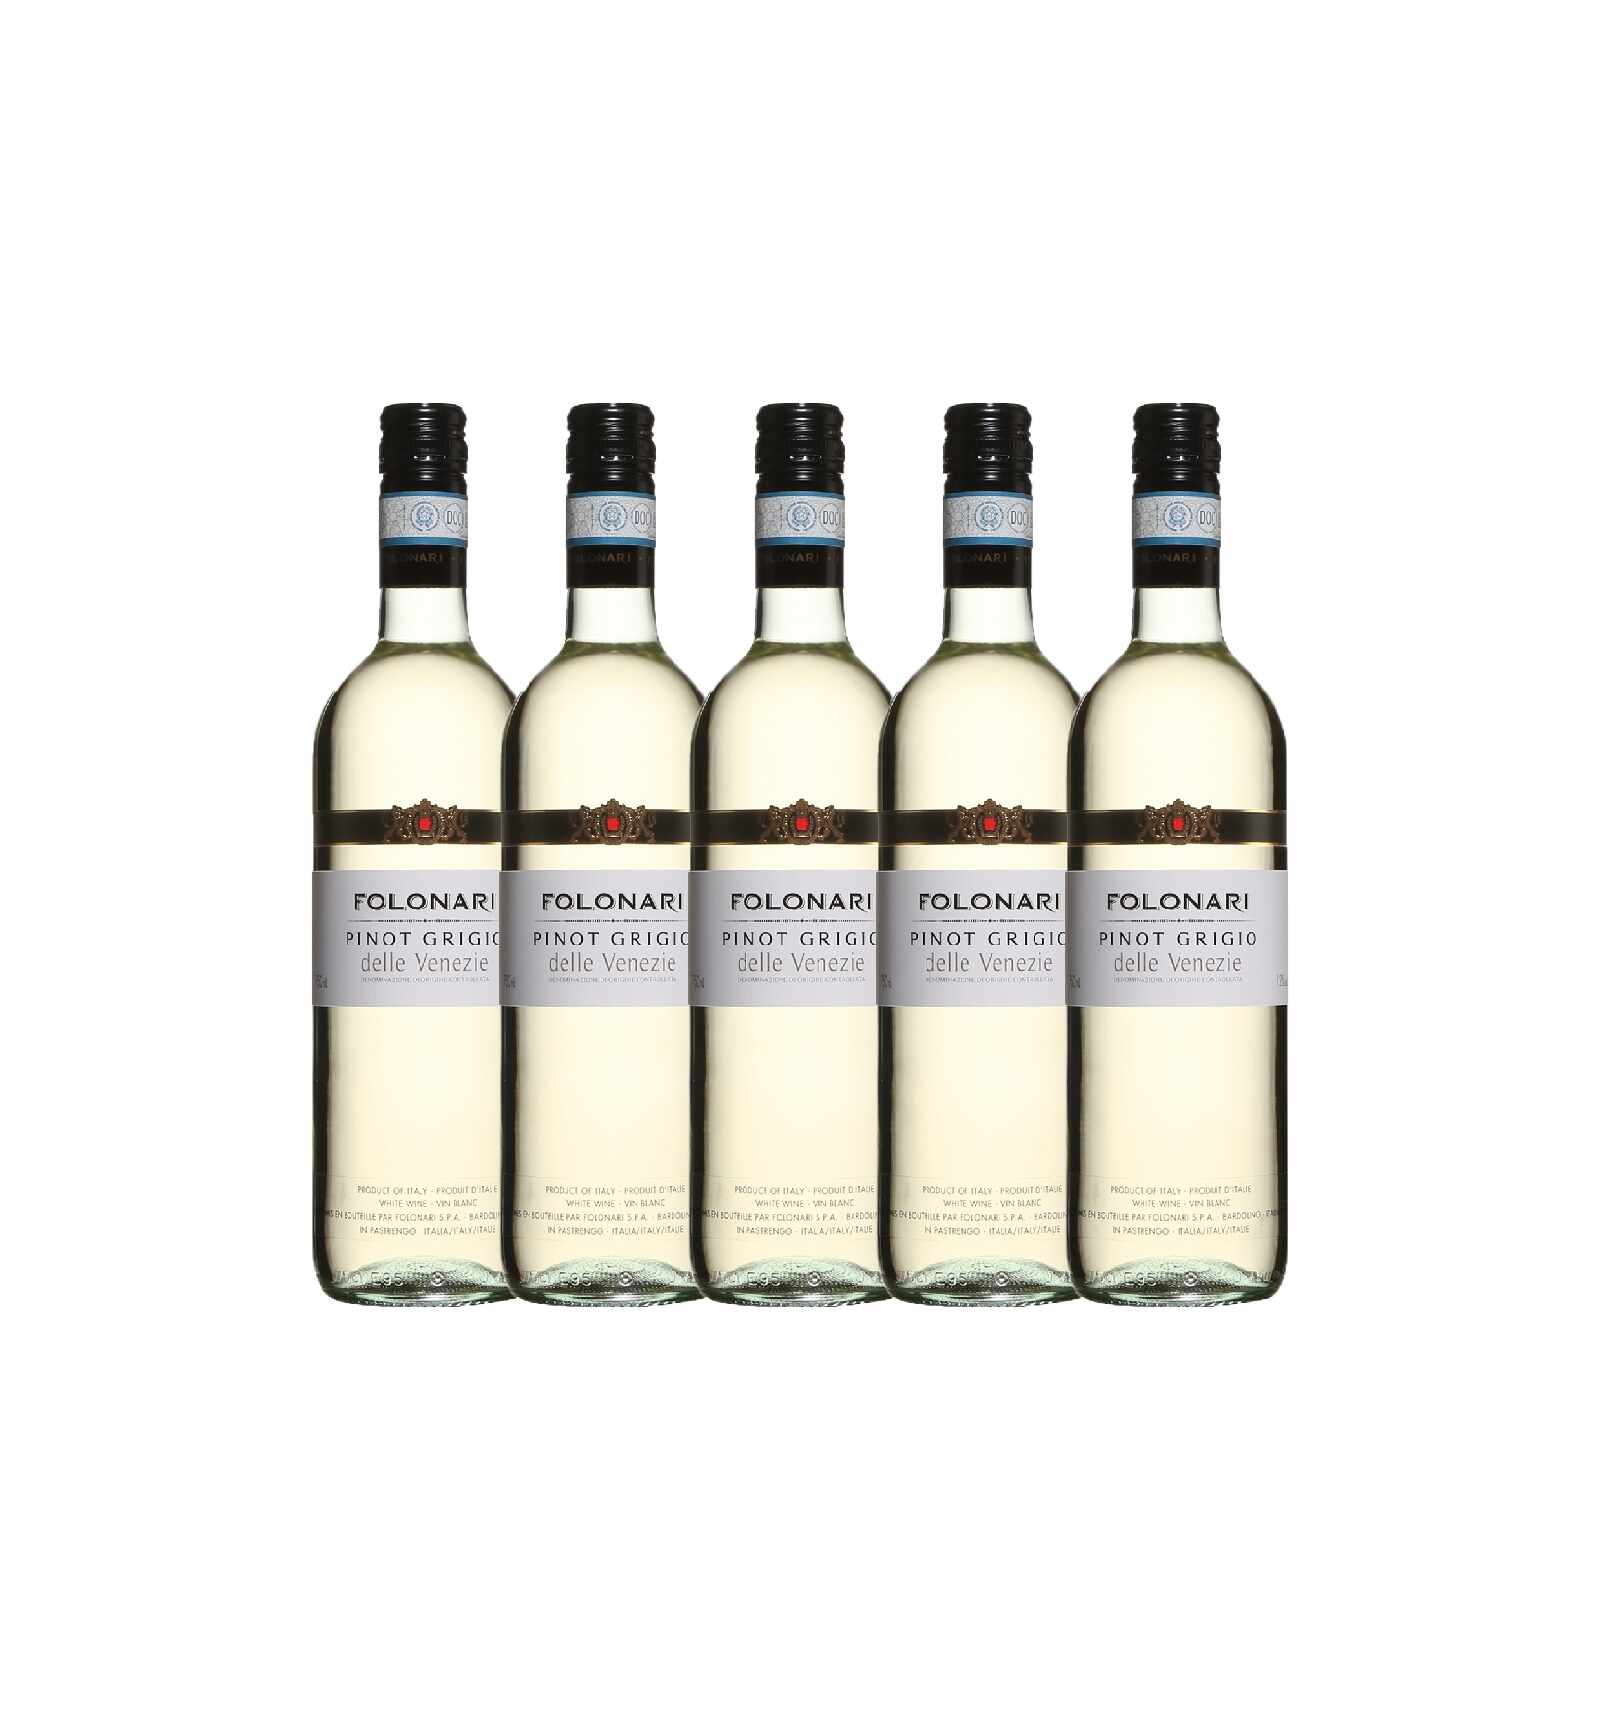 Pachet 5 sticle Vin alb, Pinot Grigio, Folonari delle Venezie, 12% alc., 0.75L, Italia